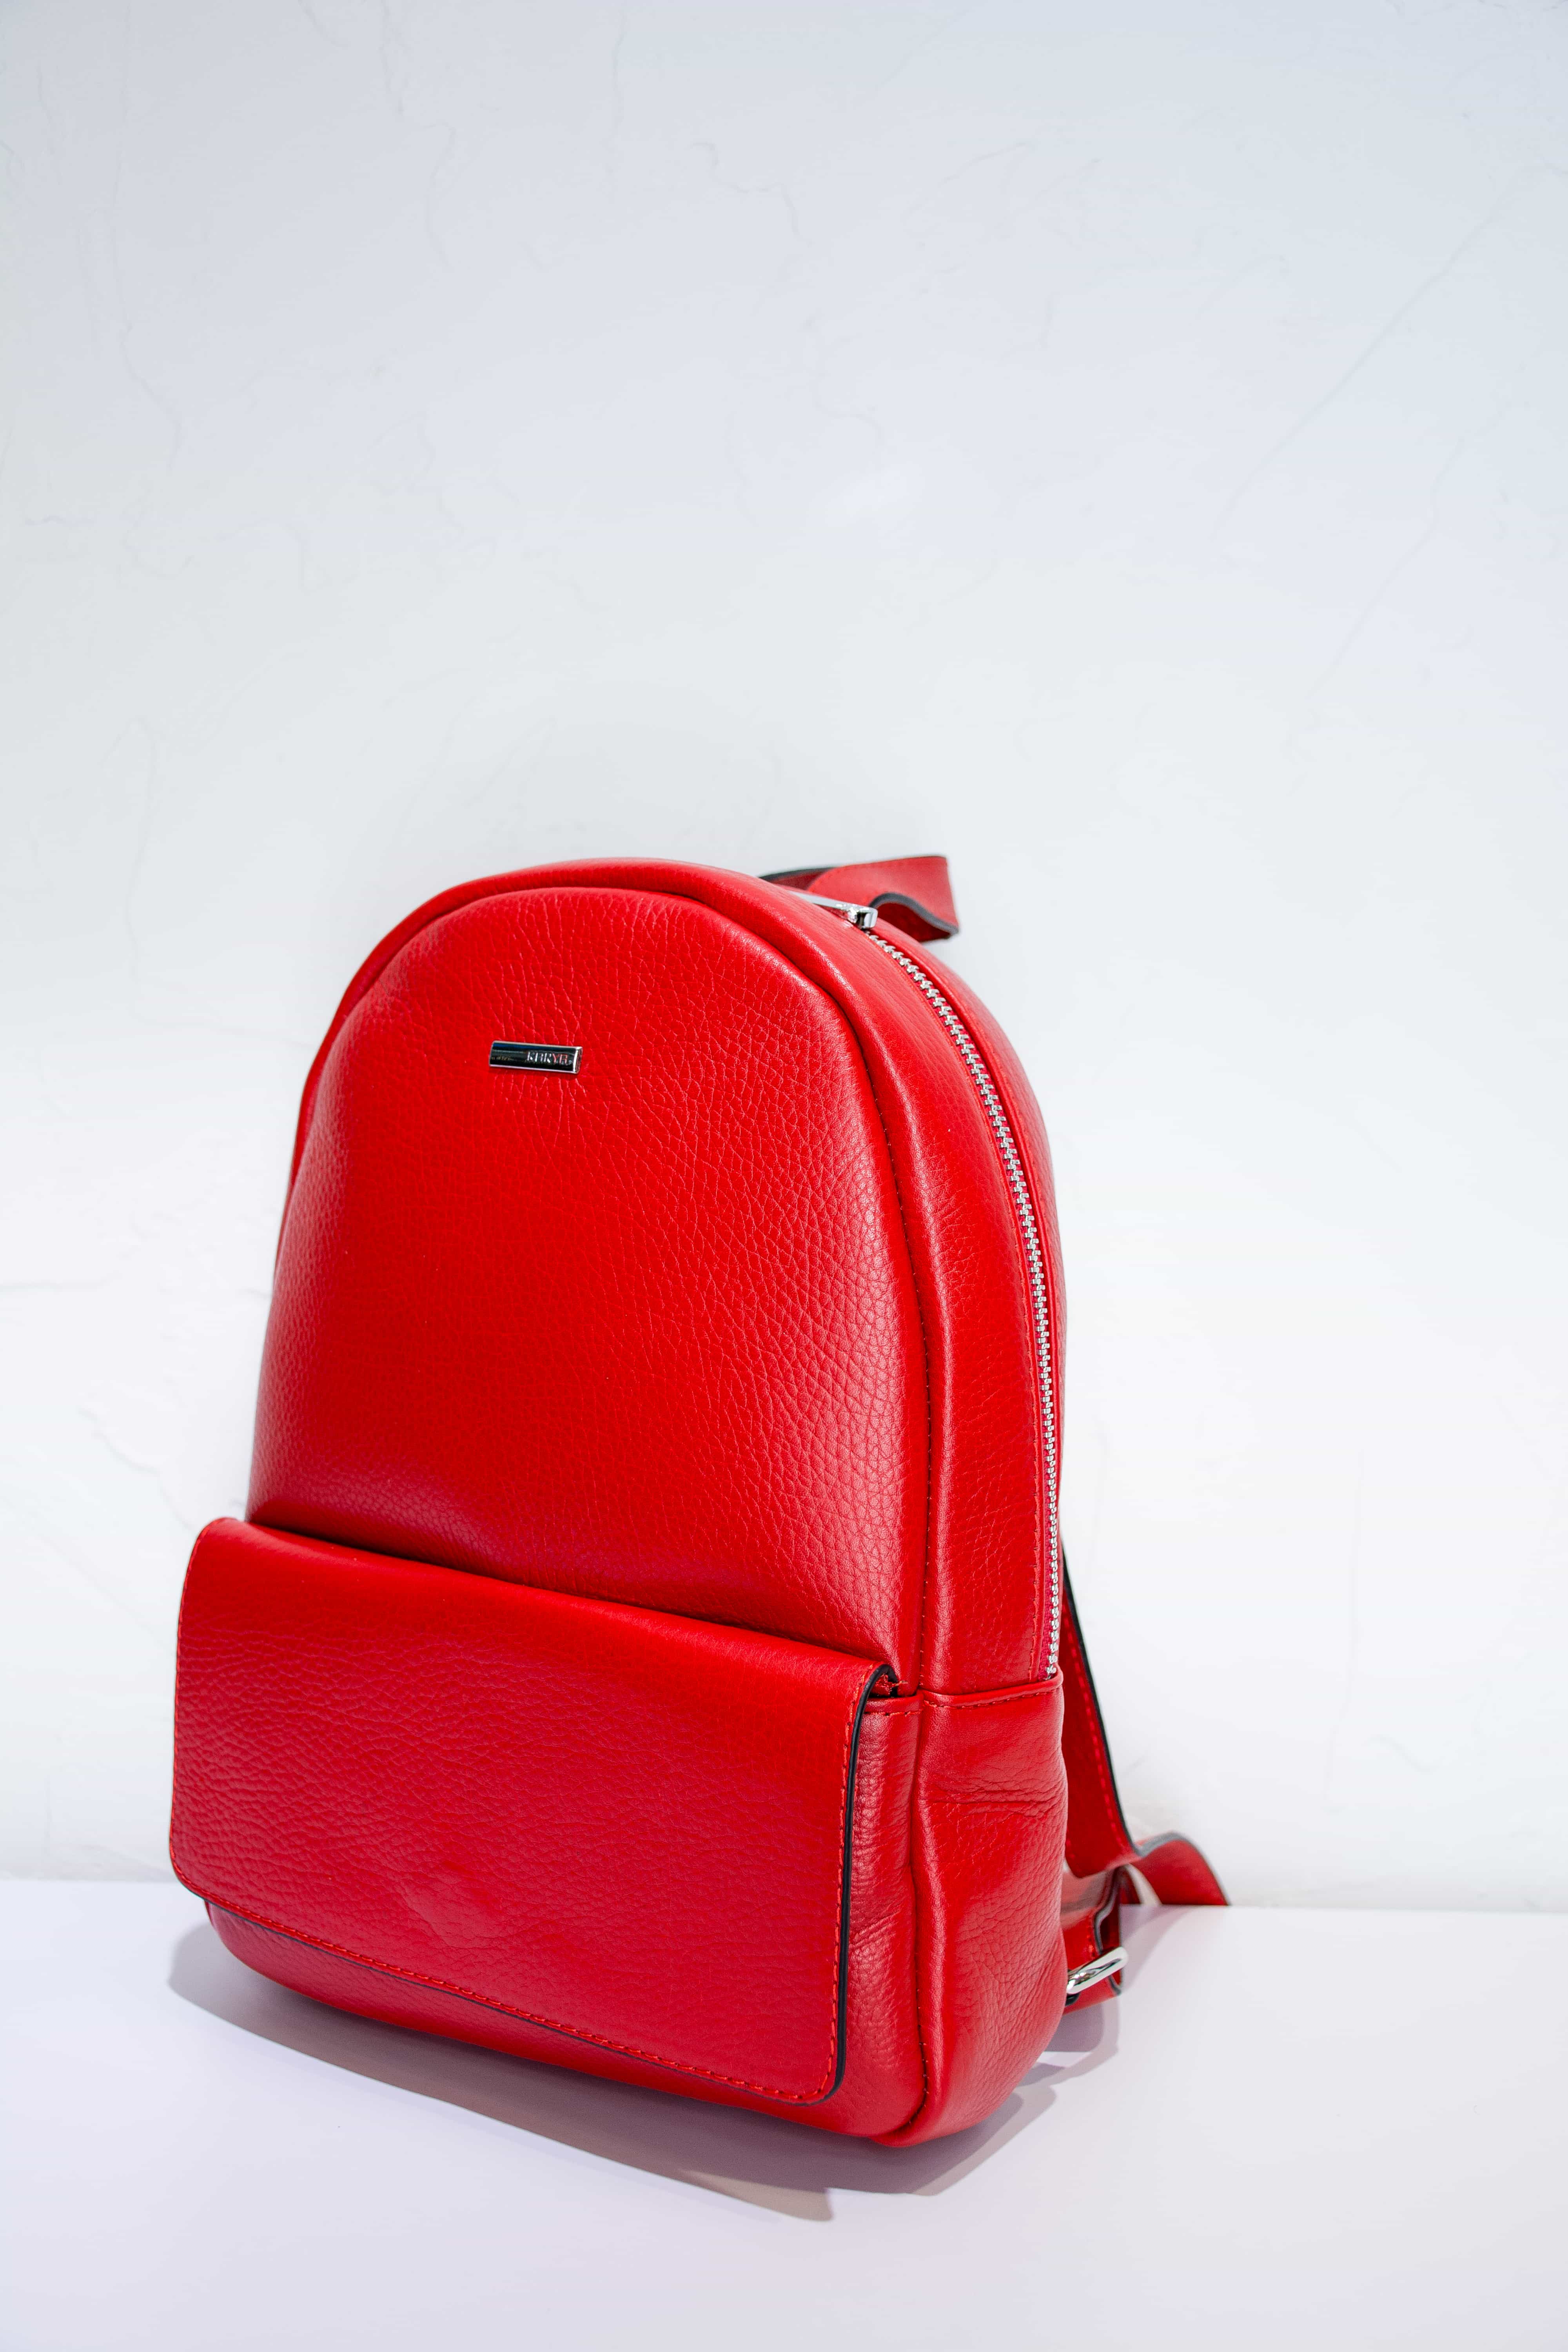 Рюкзак для женщин из натуральной кожи KARYA. 0741-46 - 4